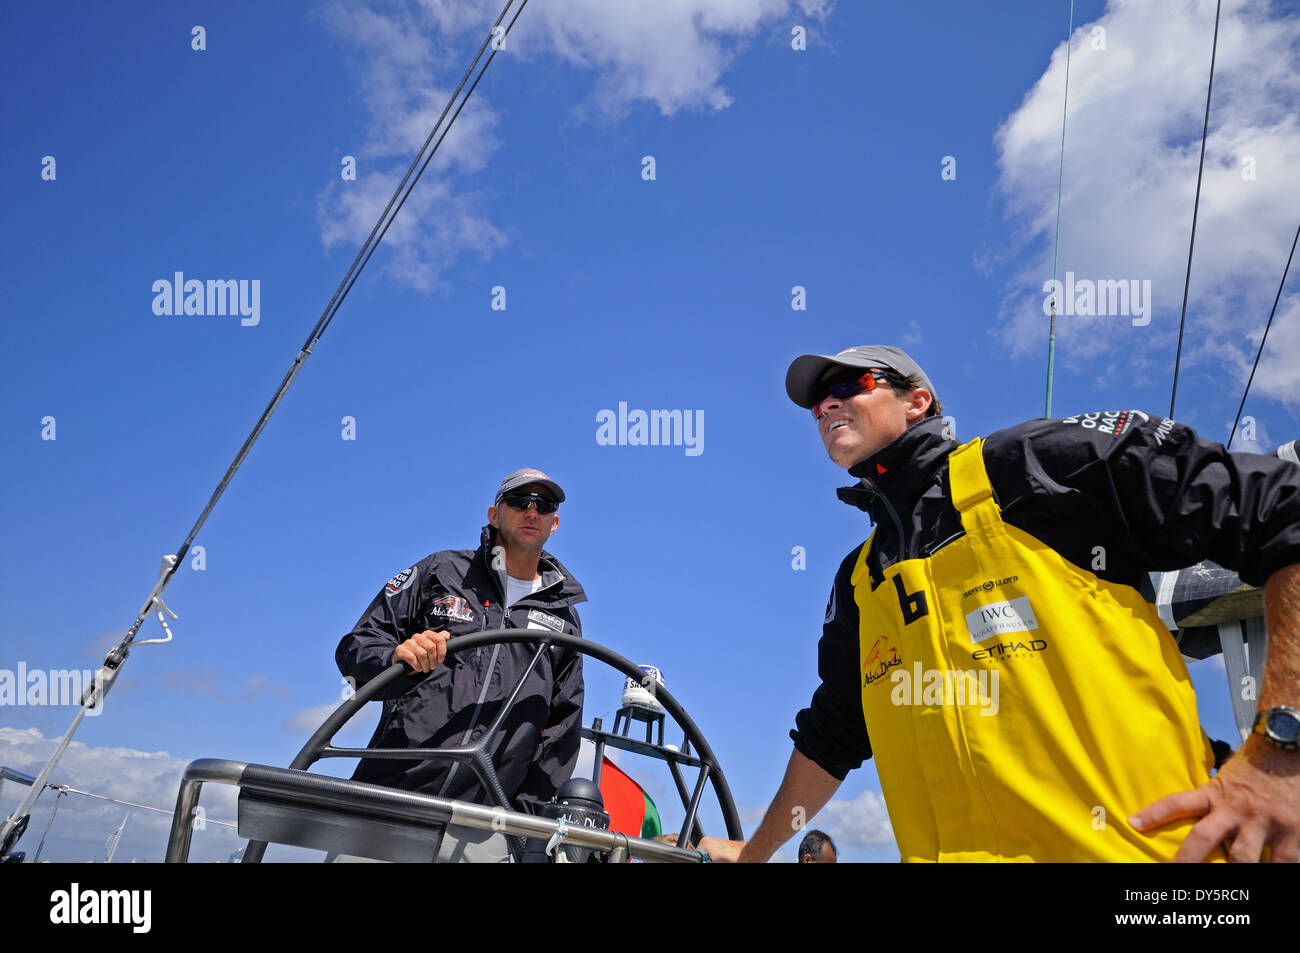 Skipper à la roue d'un bateau de course avec un équipage homme debout à proximité, les deux portant des lunettes de soleil et casquettes under blue sky Banque D'Images